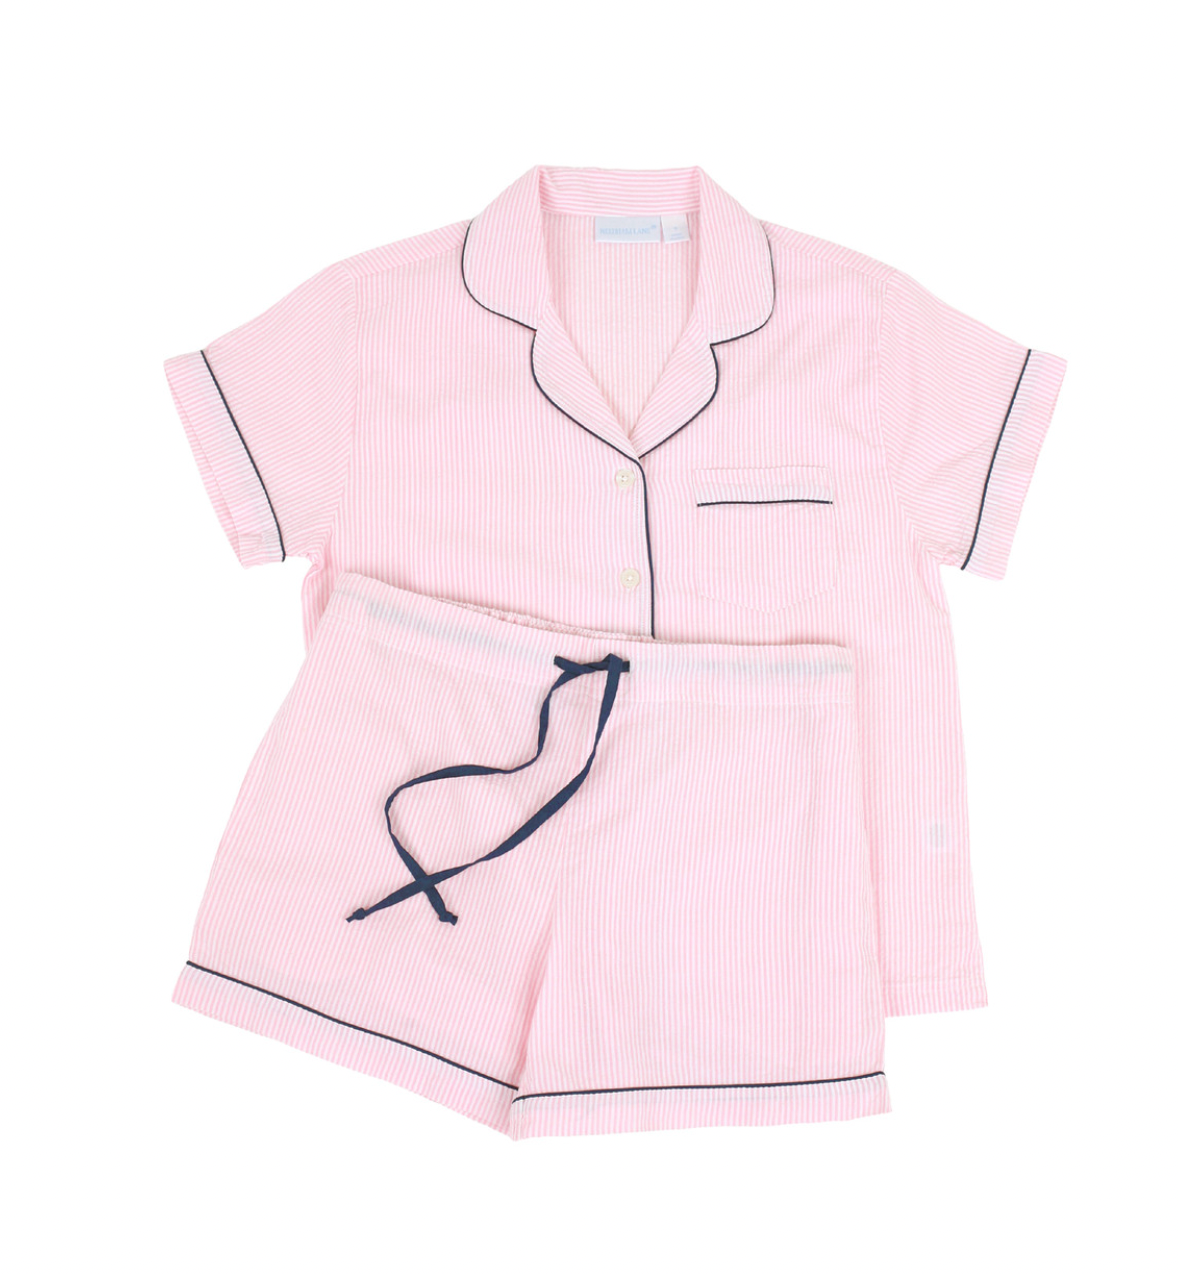 Pink and Navy Seersucker Short Pajama set